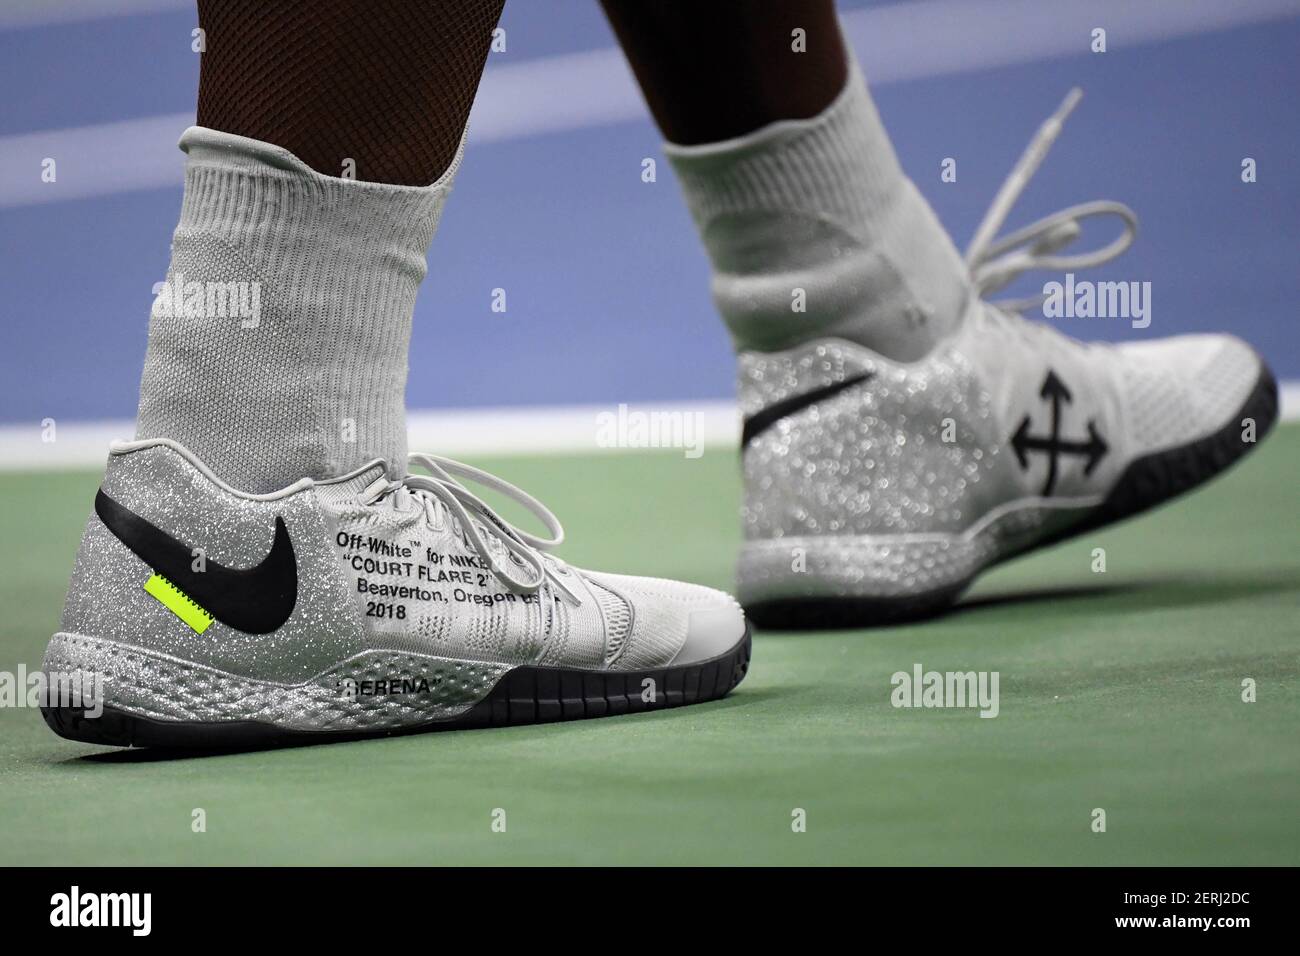 31 août 2018 ; New York, NY, États-Unis ; Les chaussures Nike de Serena  Williams ont été vues lors d'un troisième match contre sa sœur, venus  Williams, le cinquième jour du tournoi